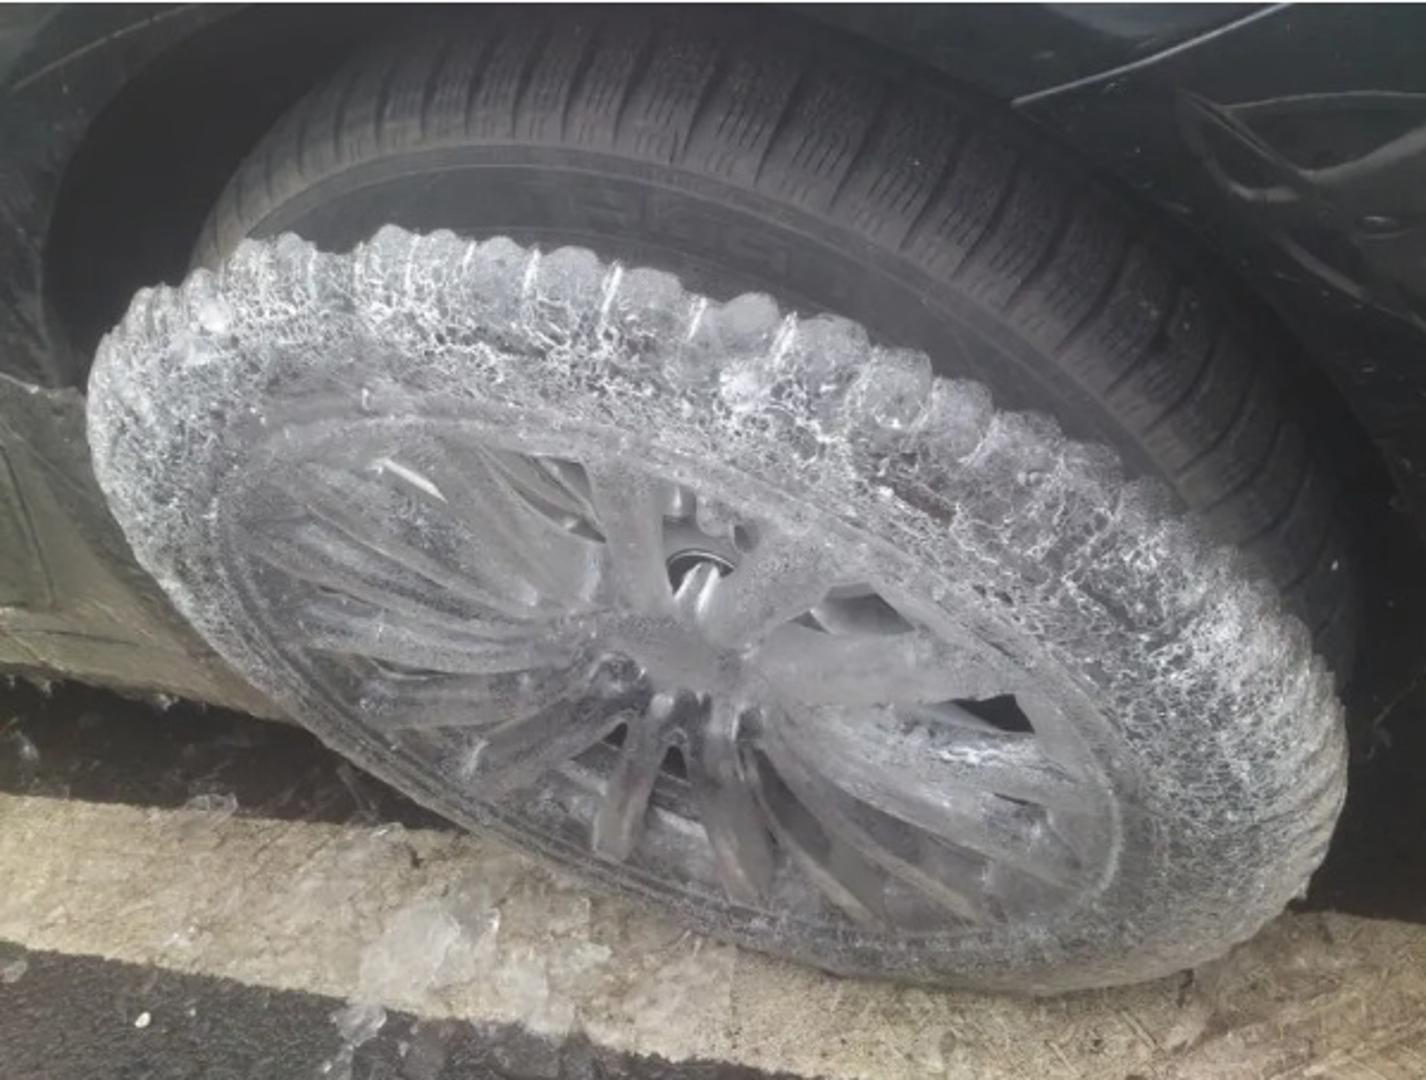 I kotači su smrznuti.